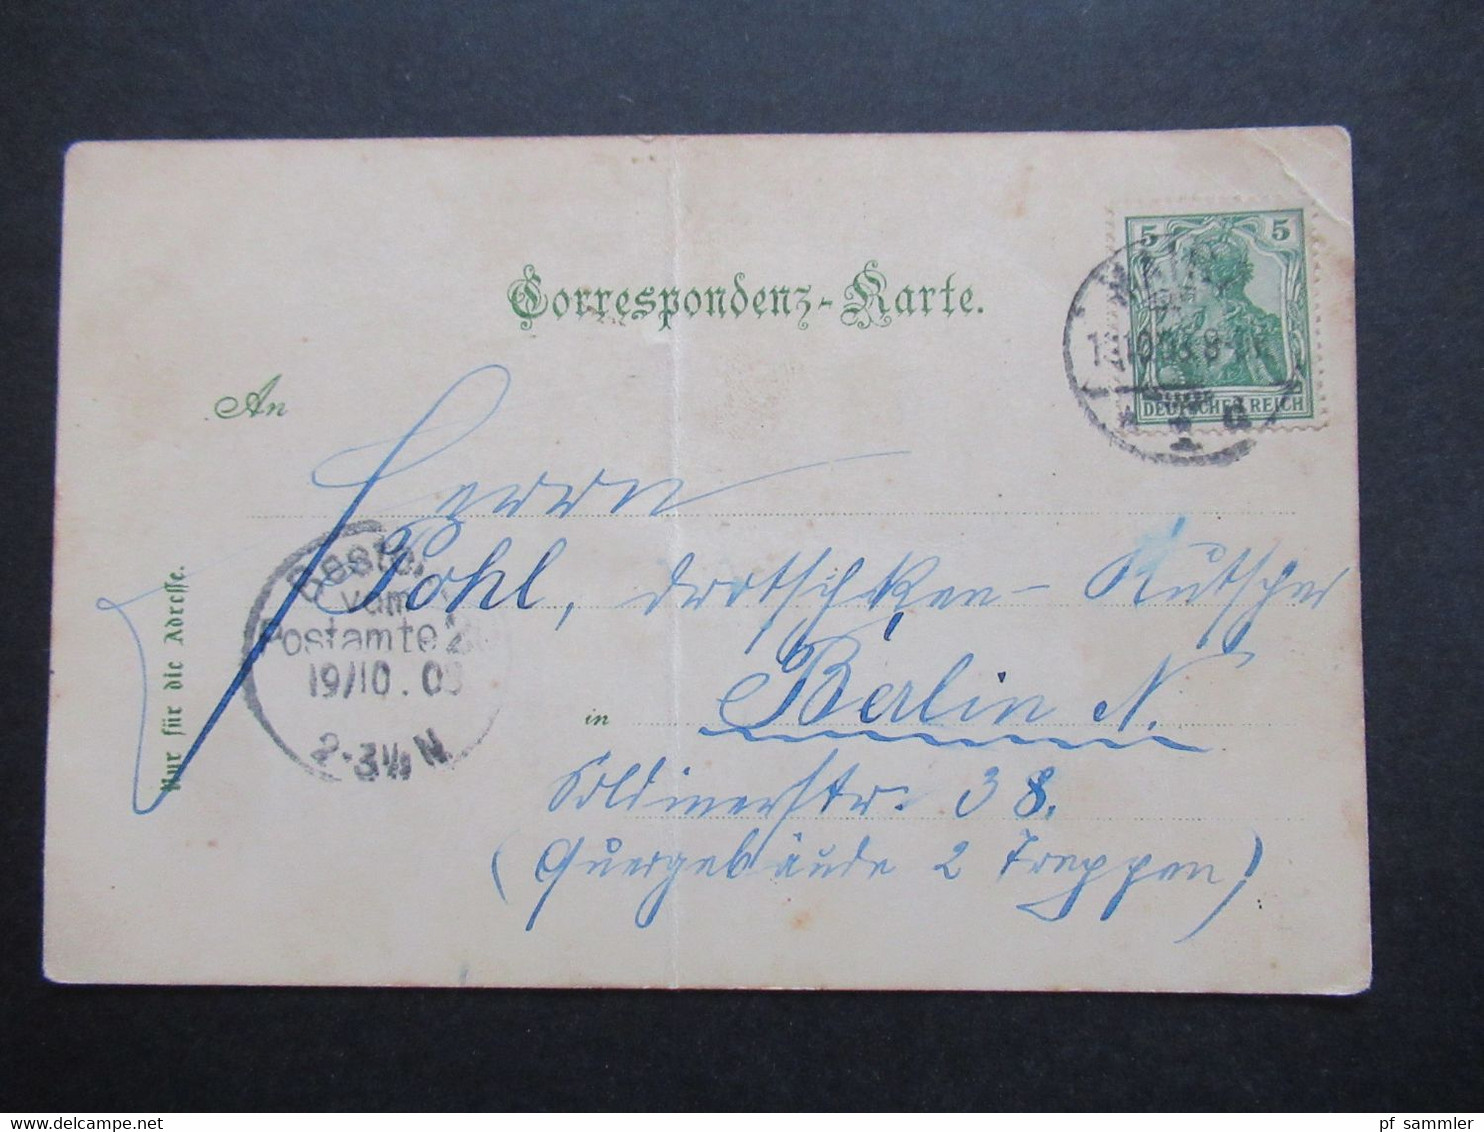 Österreich / DR 1903 Litho Gruss Aus Zwentendorf Mehrbildkarte Kirche Handlung Karl Zellhofer. Verlag Edgar Schmidt Dres - Gruss Aus.../ Gruesse Aus...